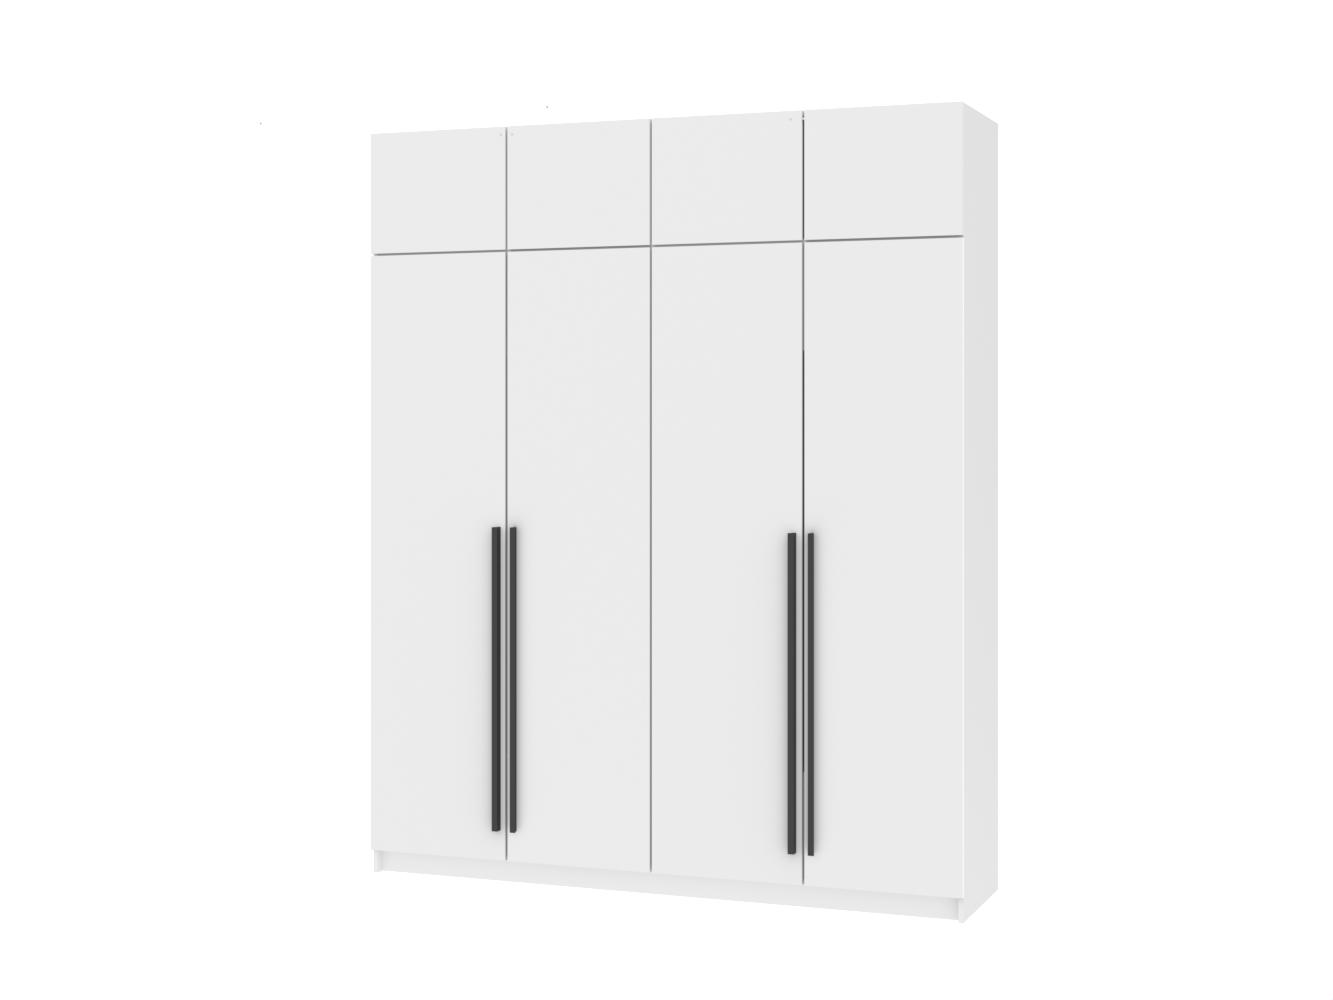  Распашной шкаф Пакс Форсанд 32 white ИКЕА (IKEA) изображение товара